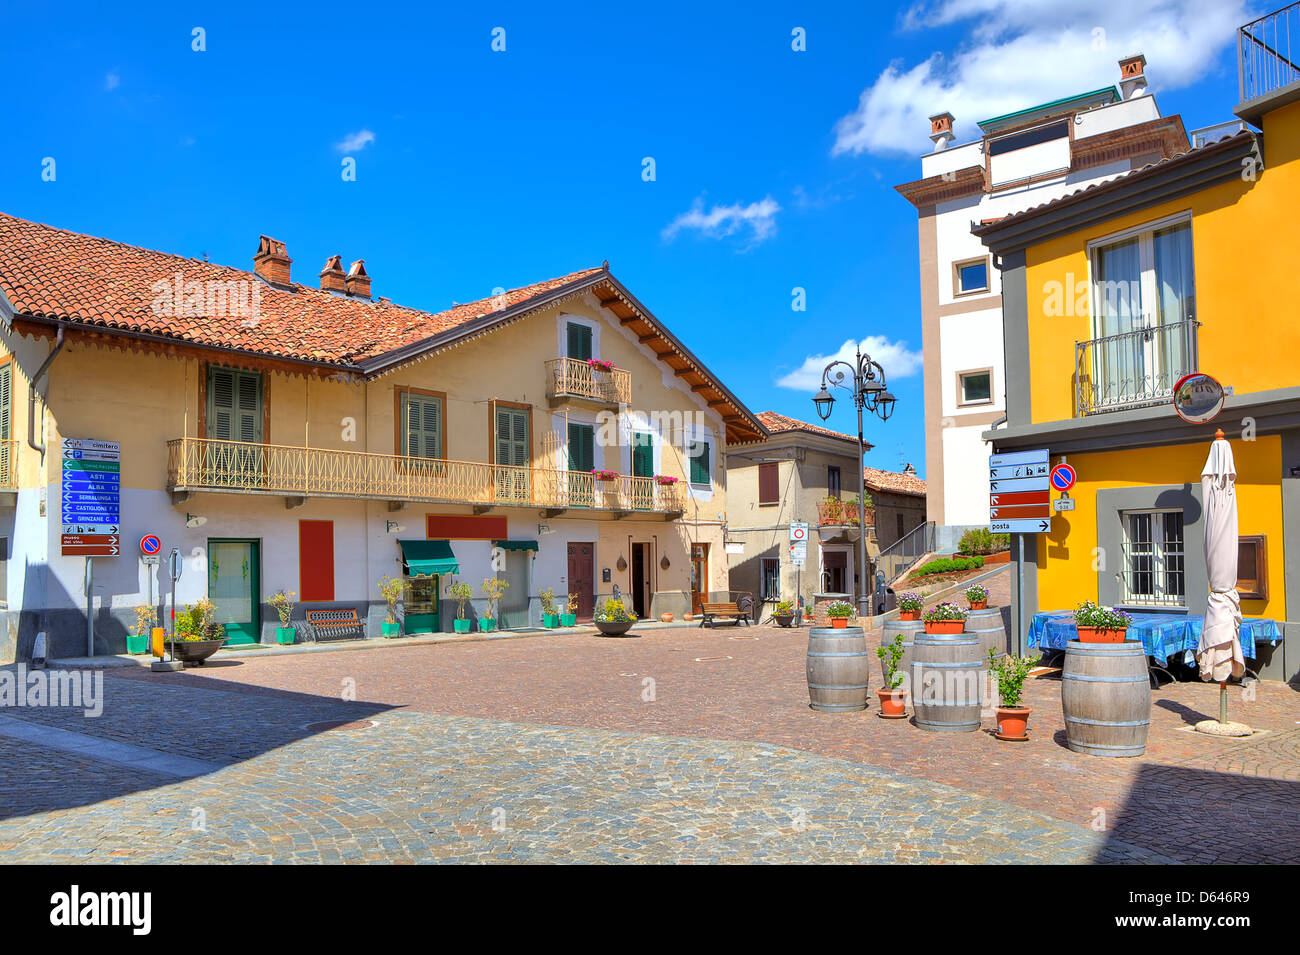 Ciottoli piccoli plaza al centro della tipica città italiana tra le case colorate in Barolo, Italia. Foto Stock